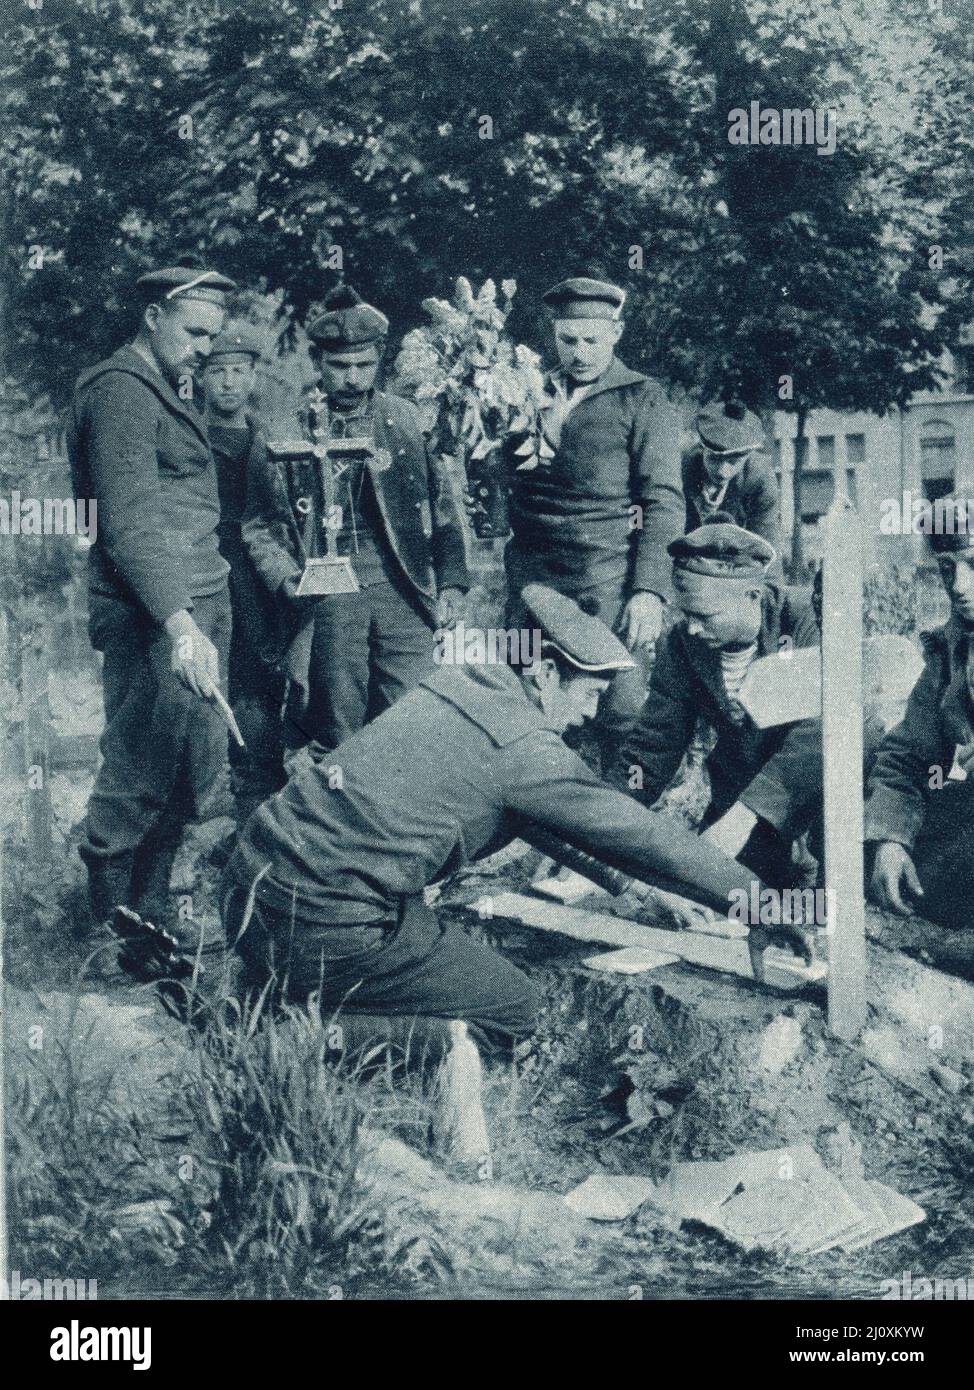 Los hombres de la Brigada Naval Francesa ponen azulejos y una cruz en una tumba de camaradas; Nieuport, Bélgica, 1915. Fotografía en blanco y negro Foto de stock